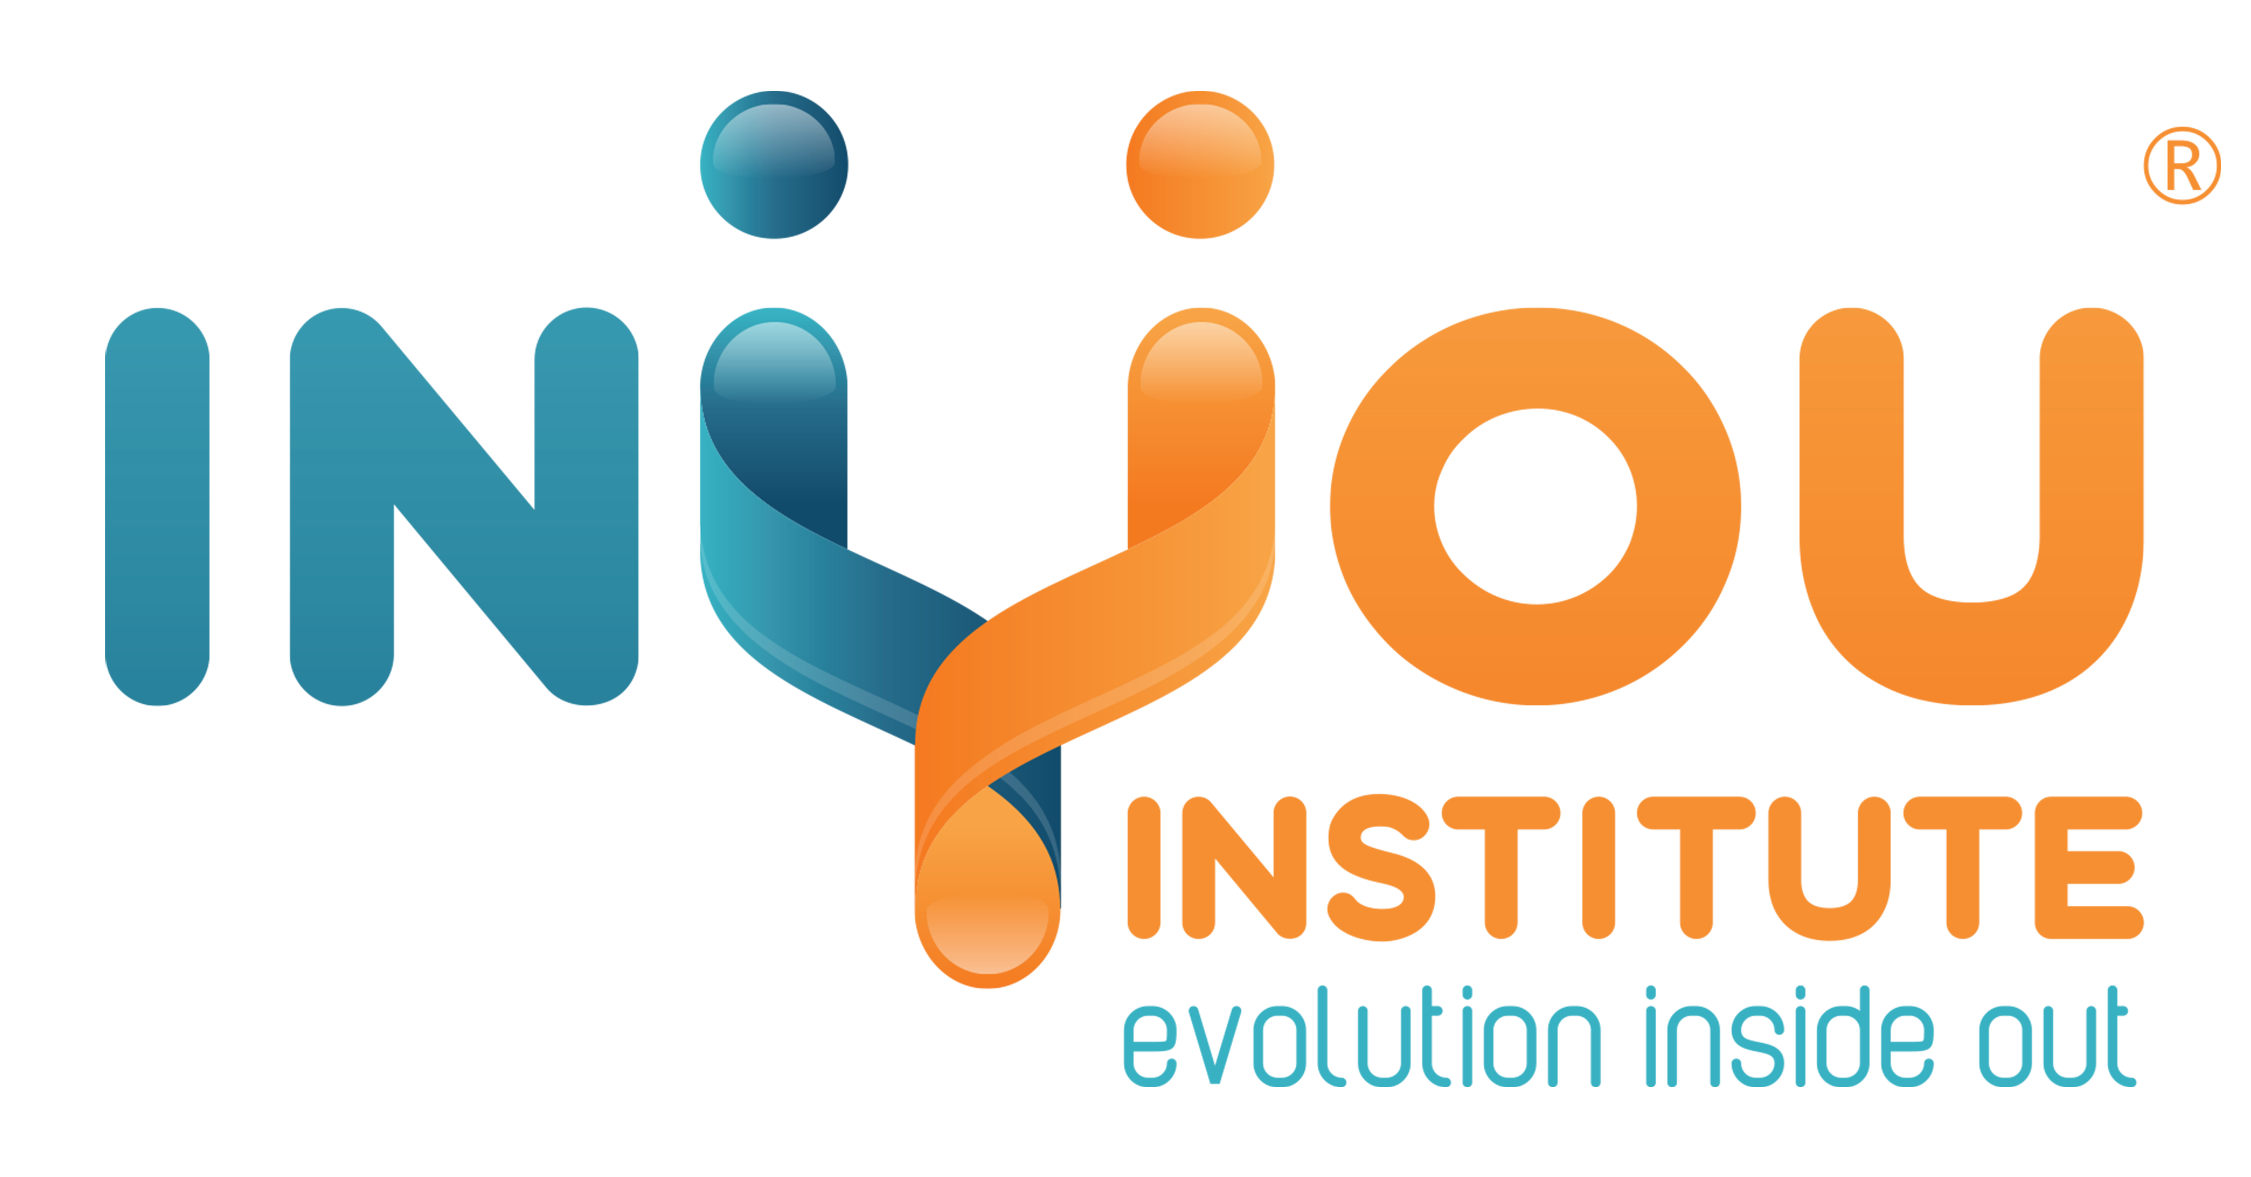 InYou Institute